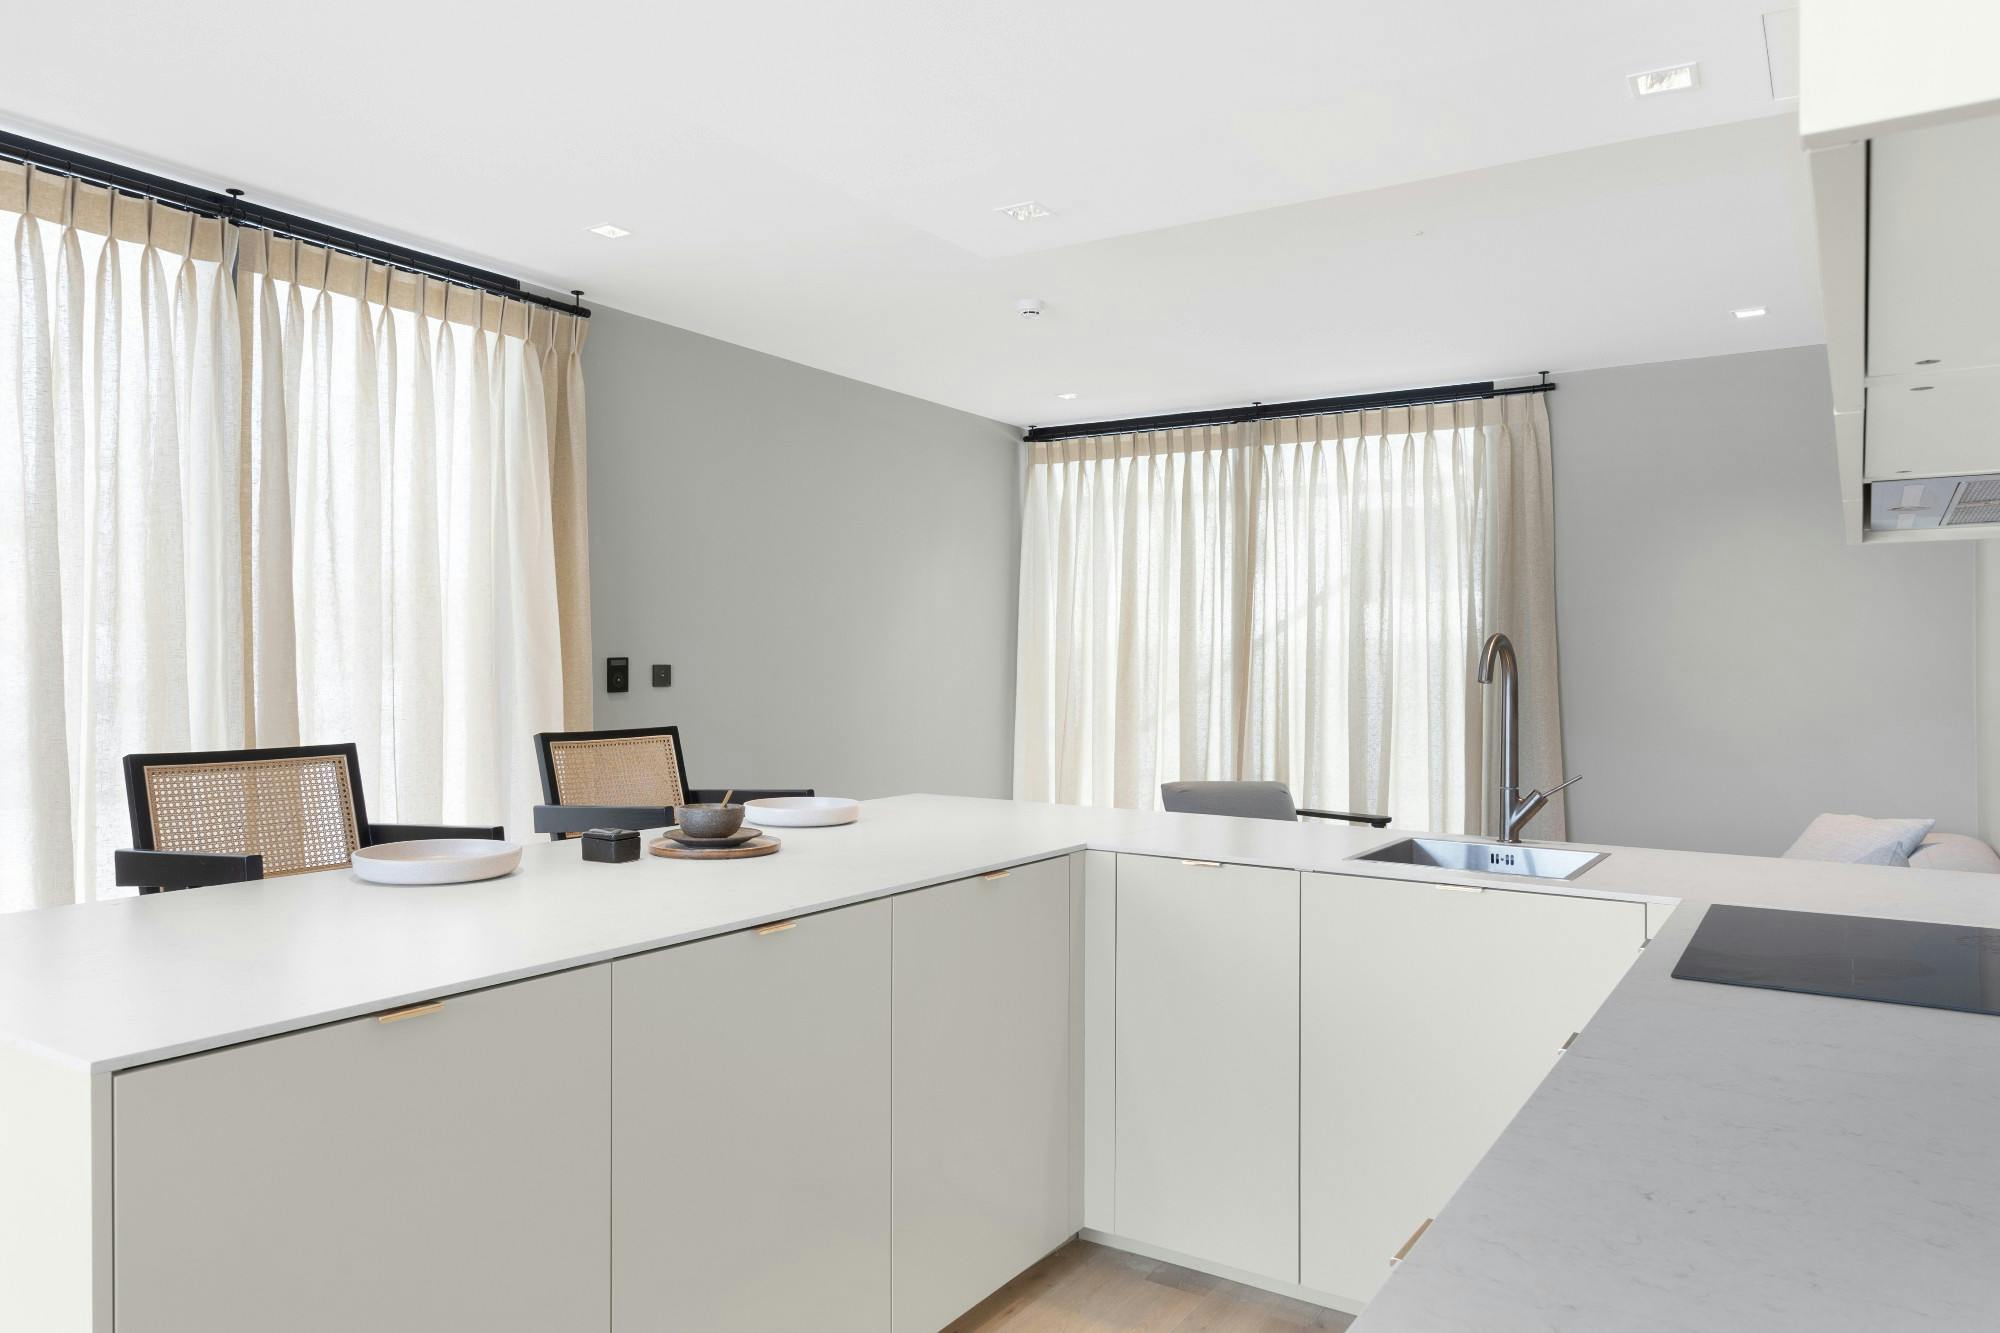 Imagen número 32 de la sección actual de Una casa prefabricada que usa Silestone para lograr un aspecto de lujo minimalista